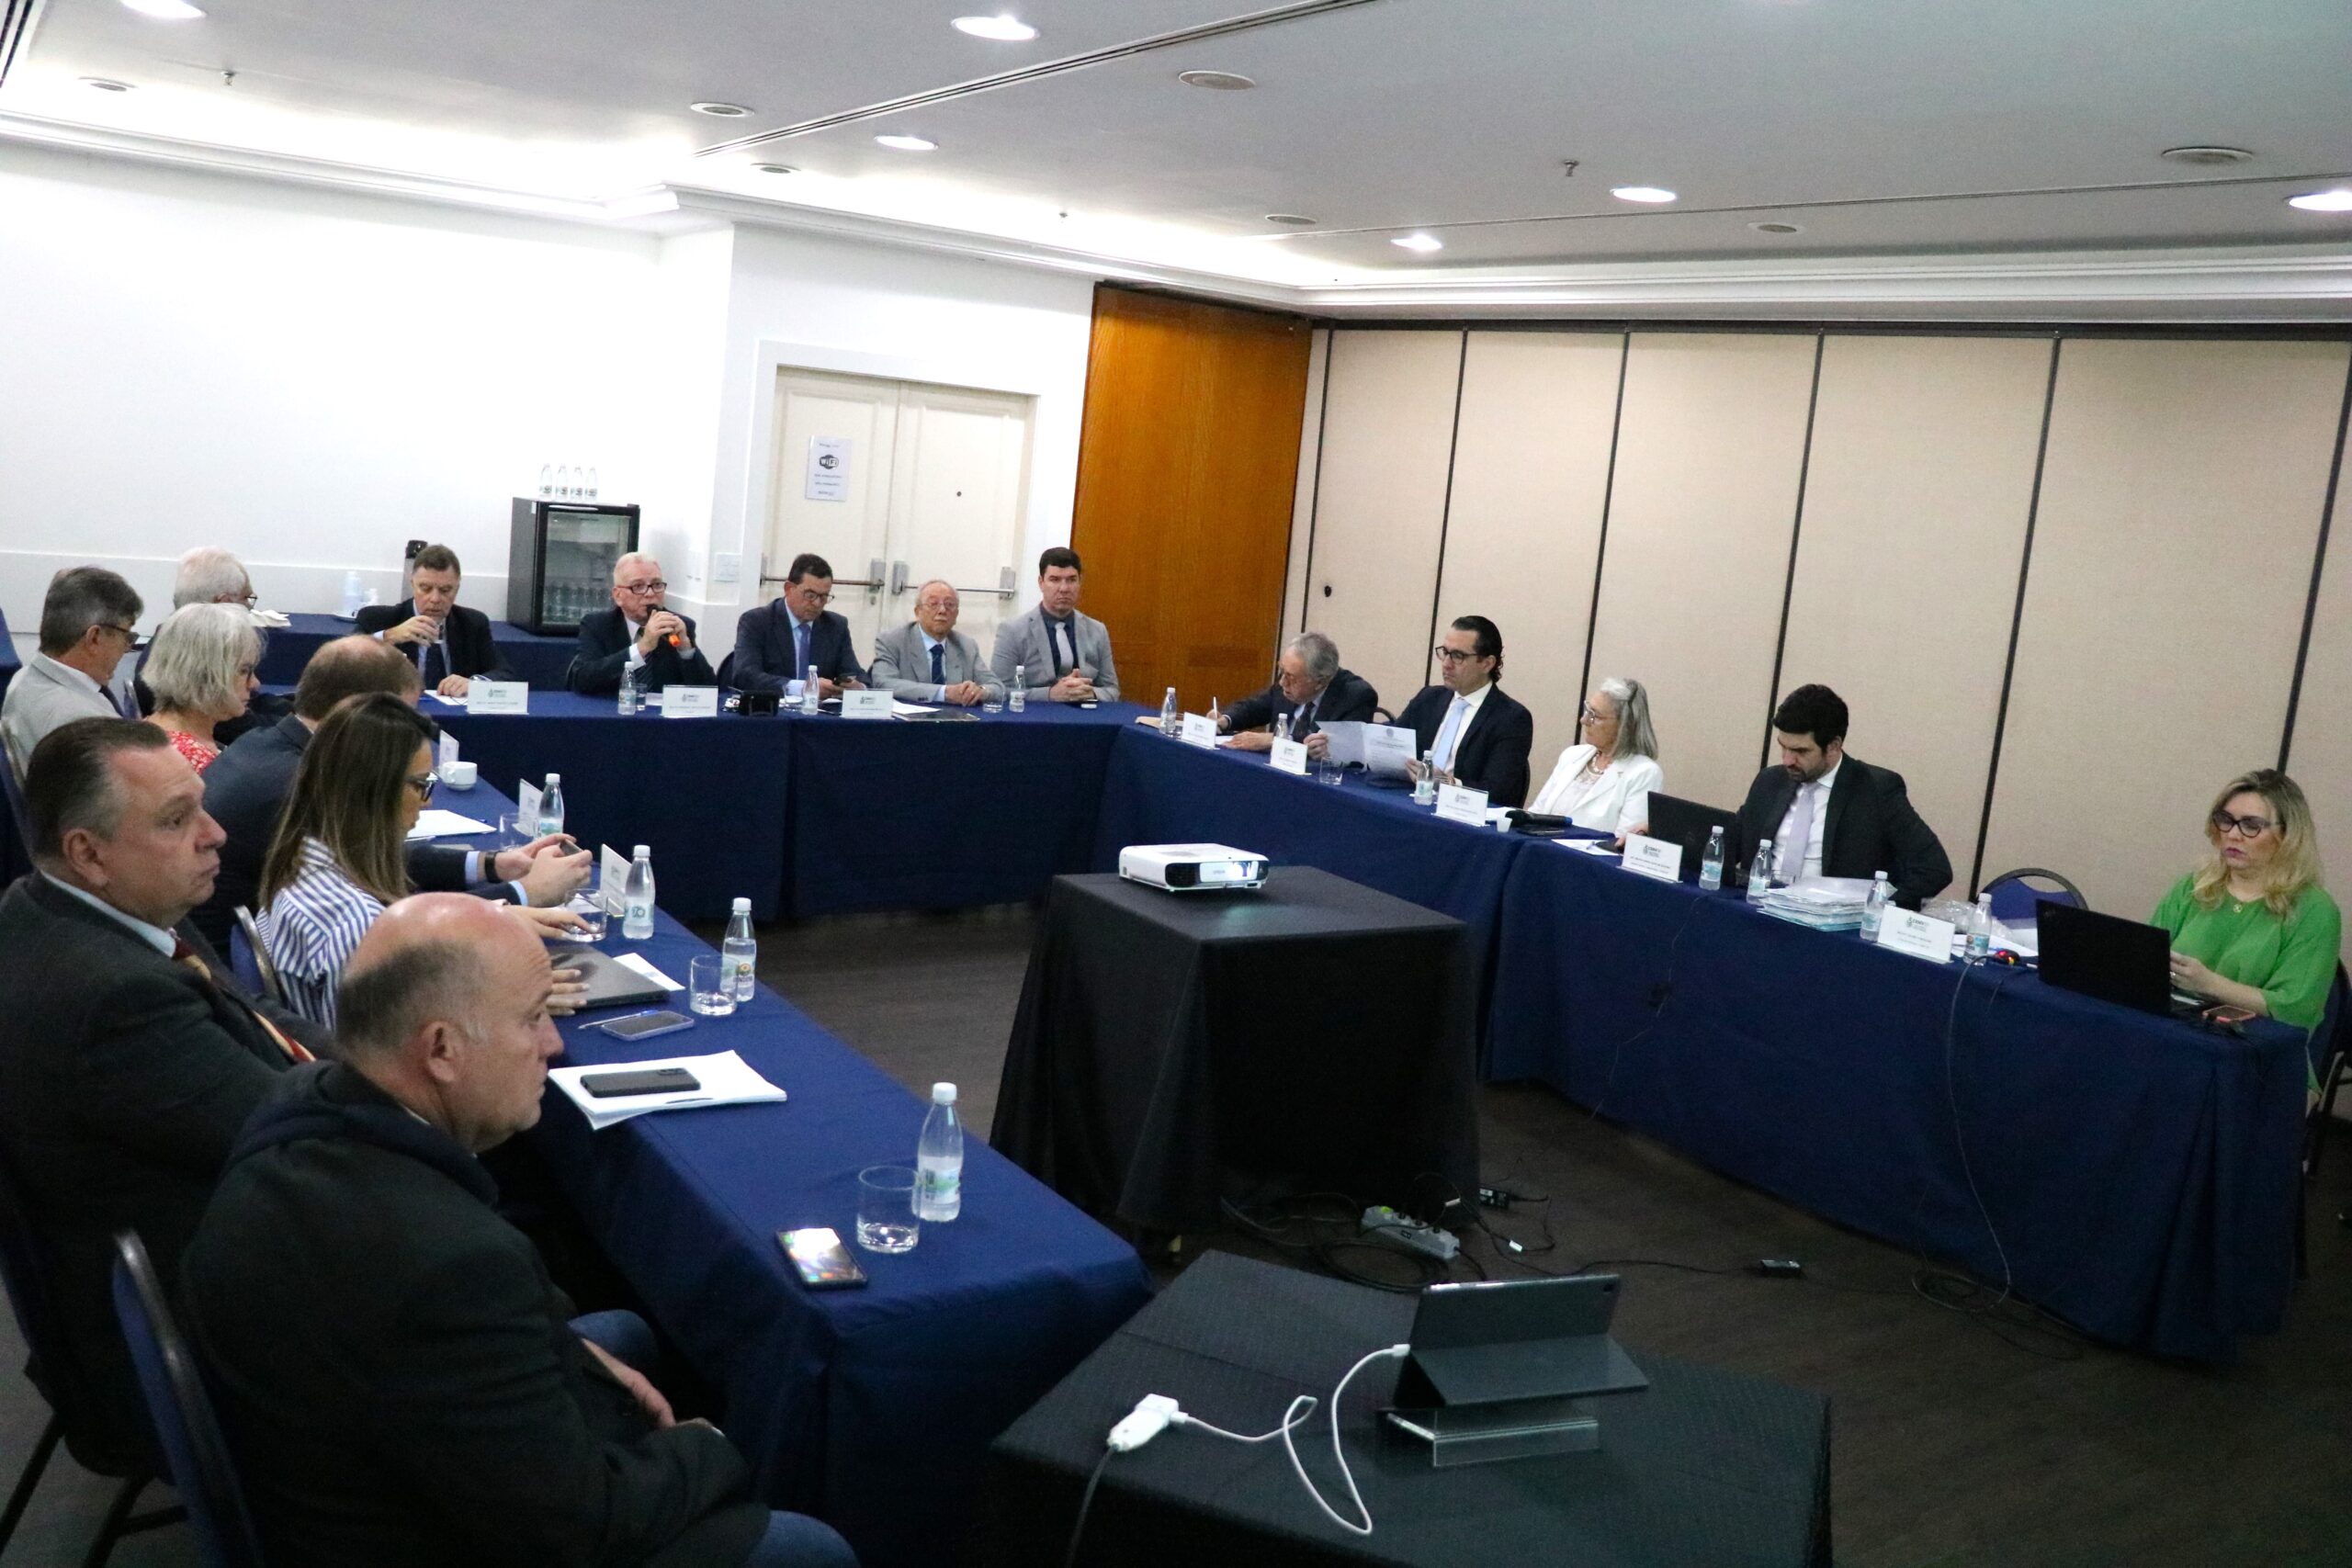 A imagem mostra os diretores e conselheiros do CRMV-SP reunidos em Plenária na cidade de Campinas. Há quatro mulheres e treze homens sentados ao entorno de mesas dispostas em "U". Ao centro, uma mesa com projetor.